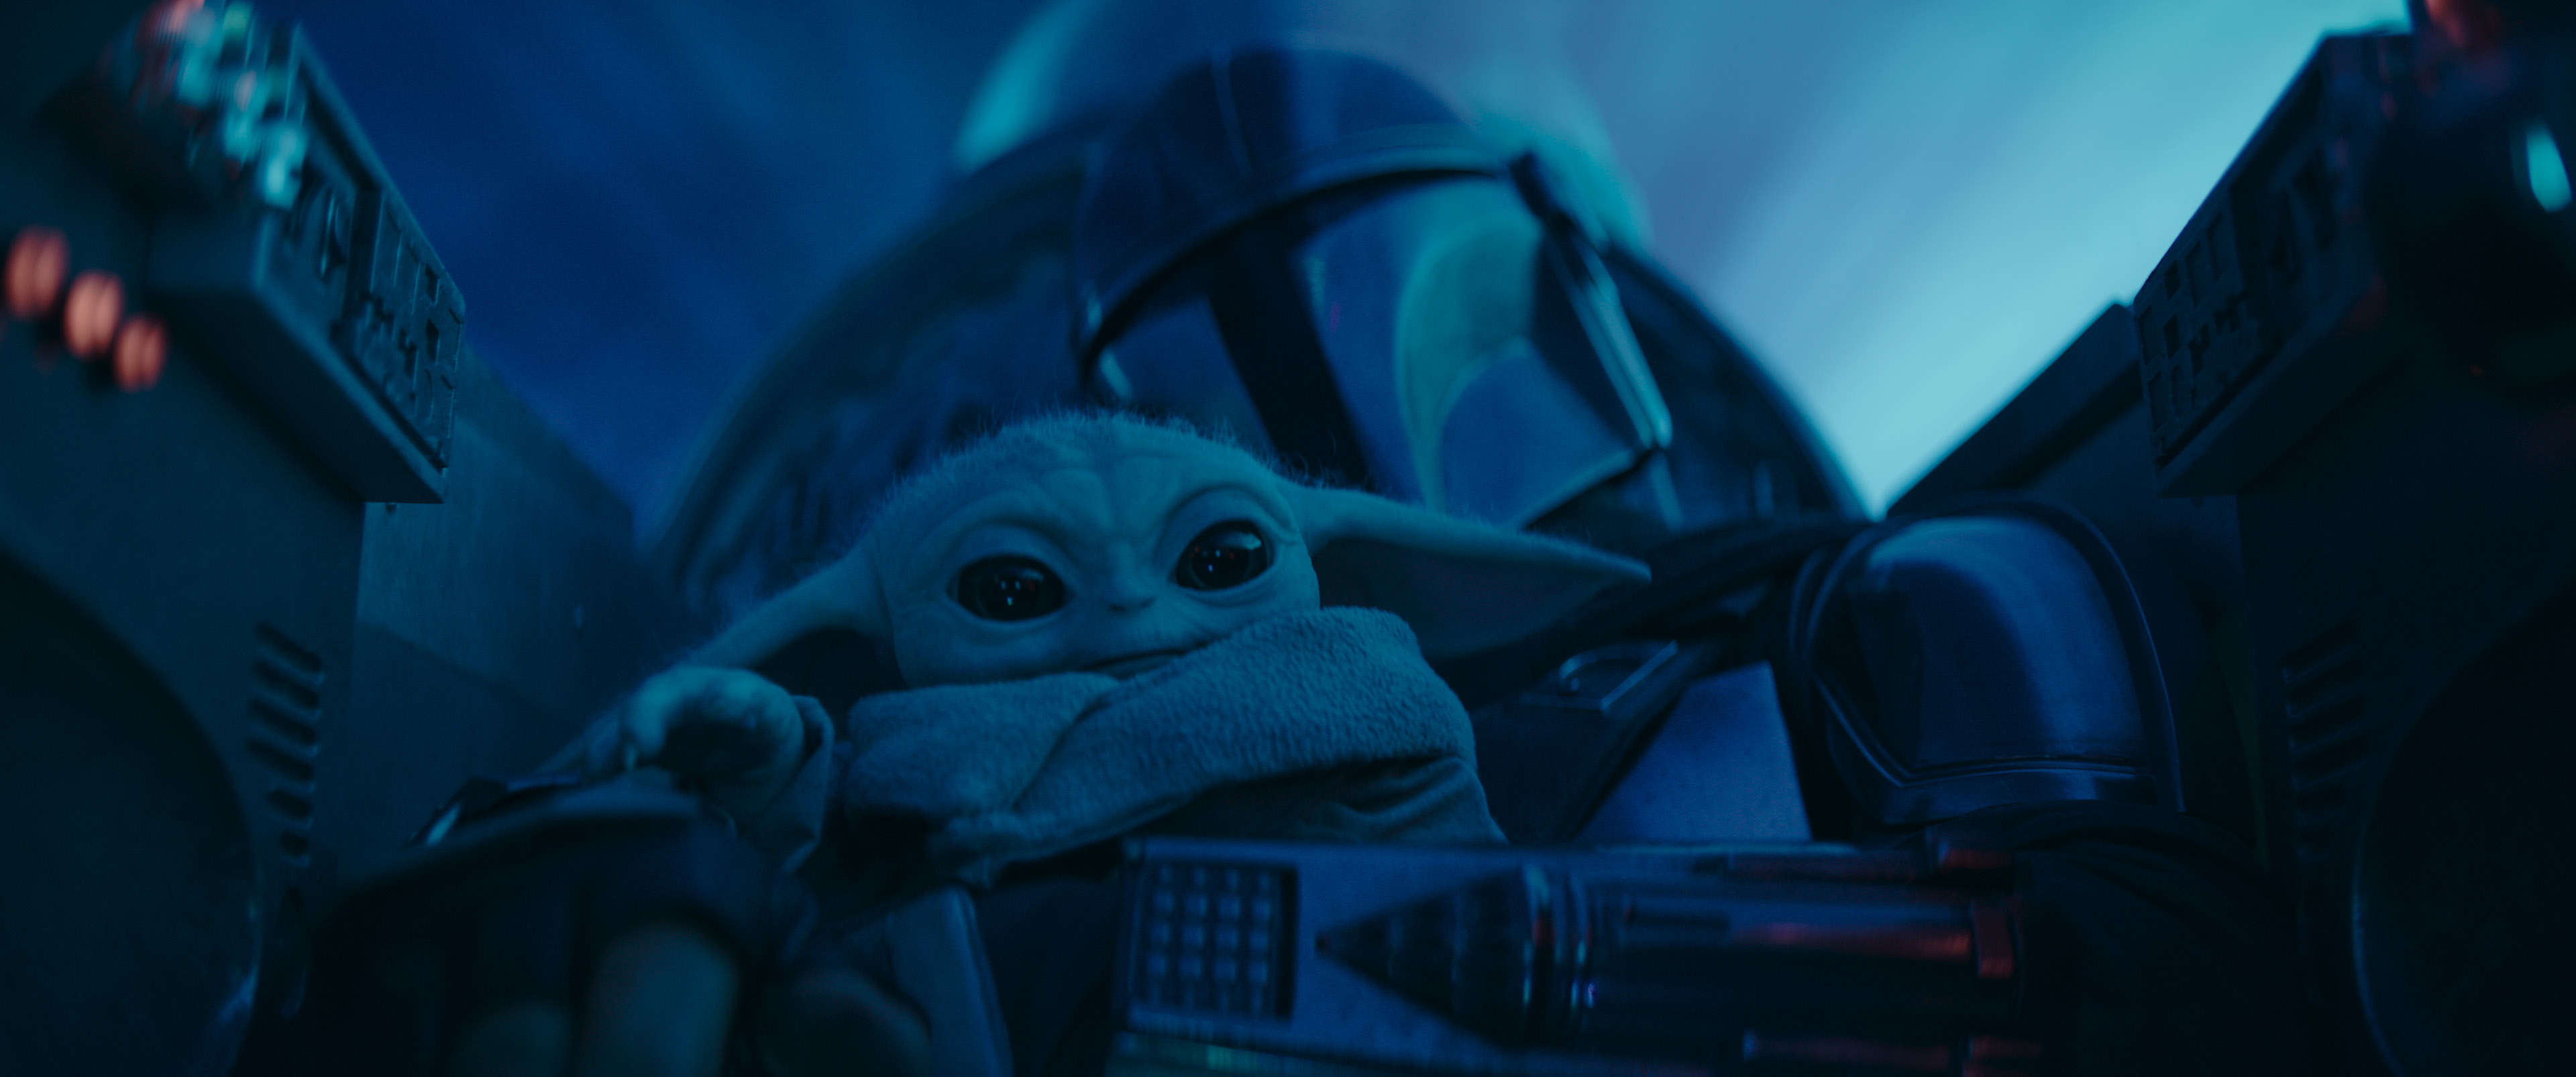 Mando kopā ar "Baby Yoda" uz sava kuģa. Attēls no seriāla The Mandalorian par Disney+.